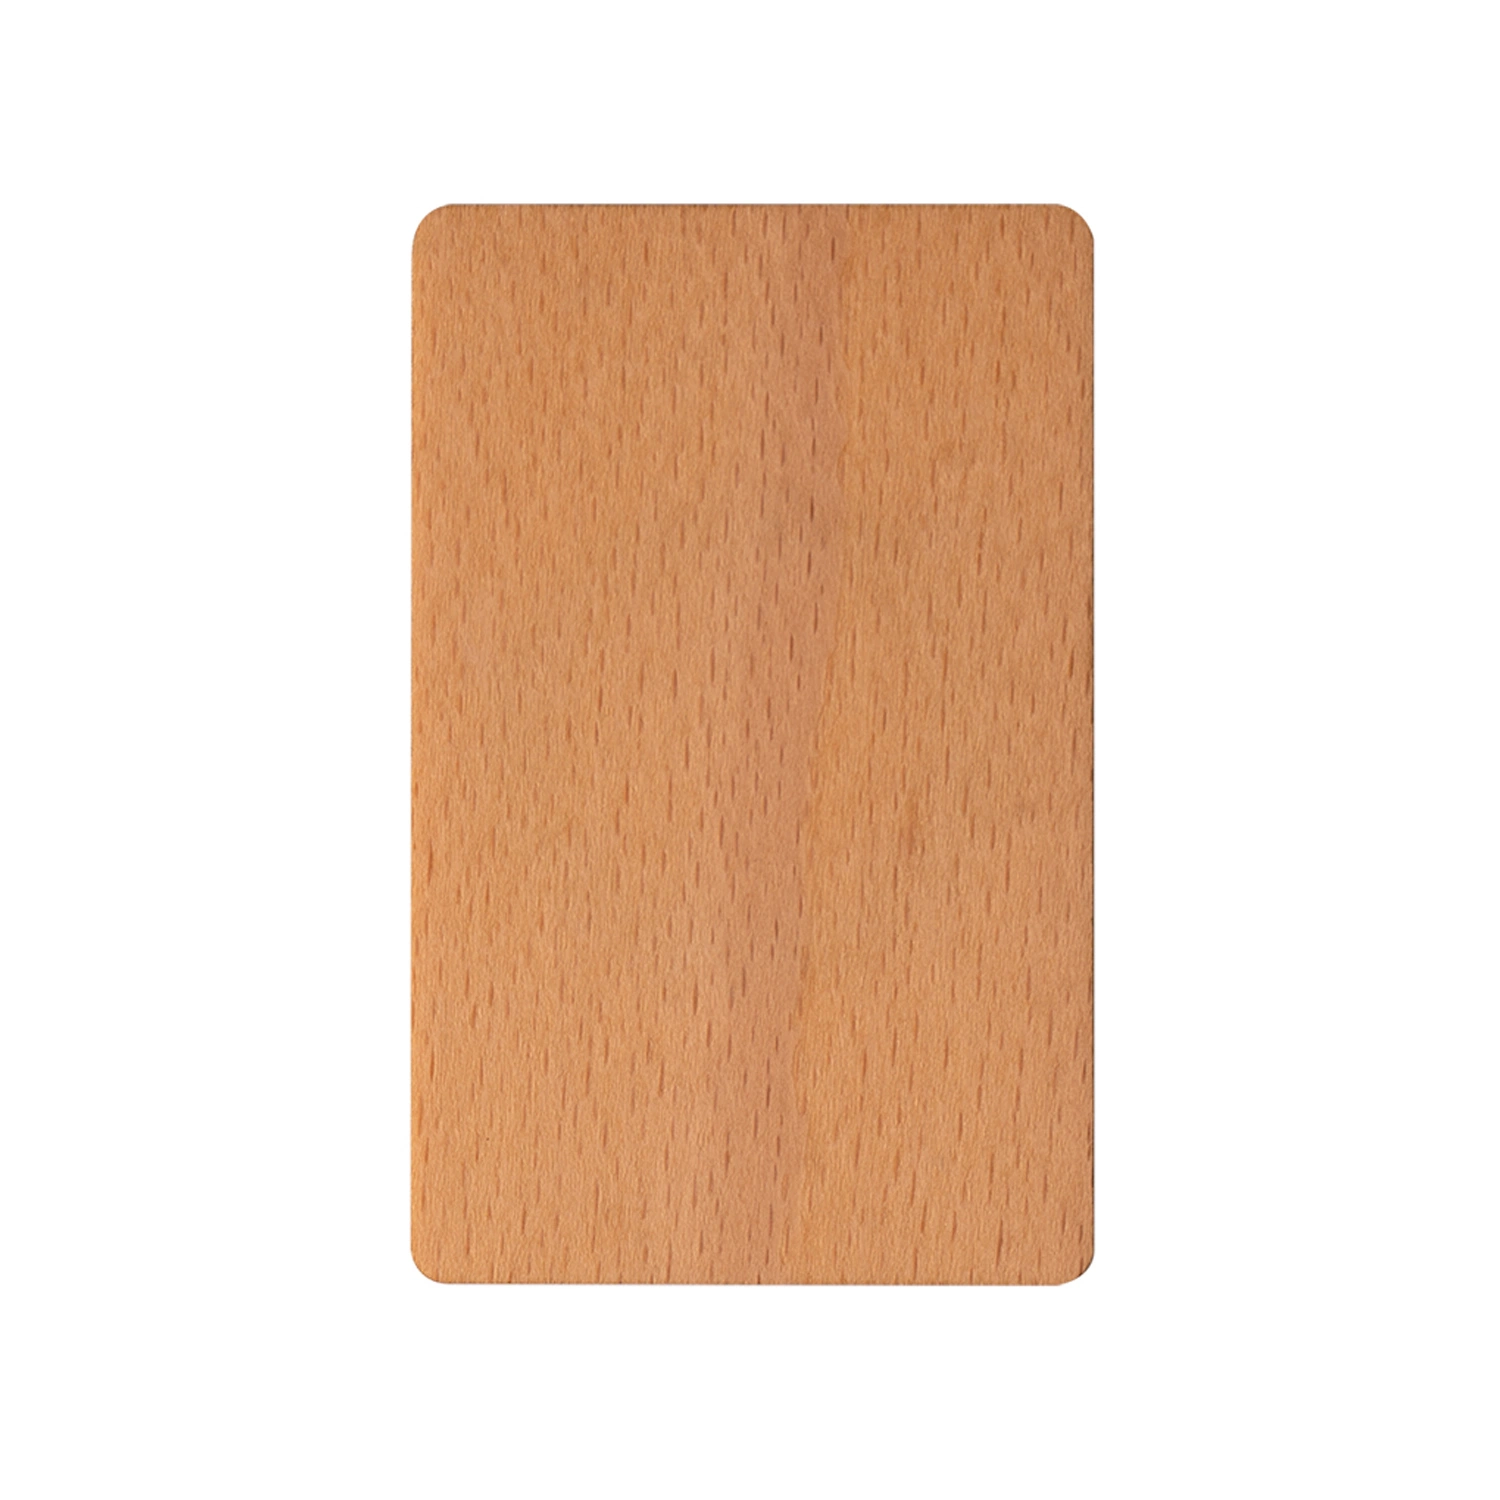 Holz NFC Karte Holz RFID Karte Holz Hote Schlüsselkarte